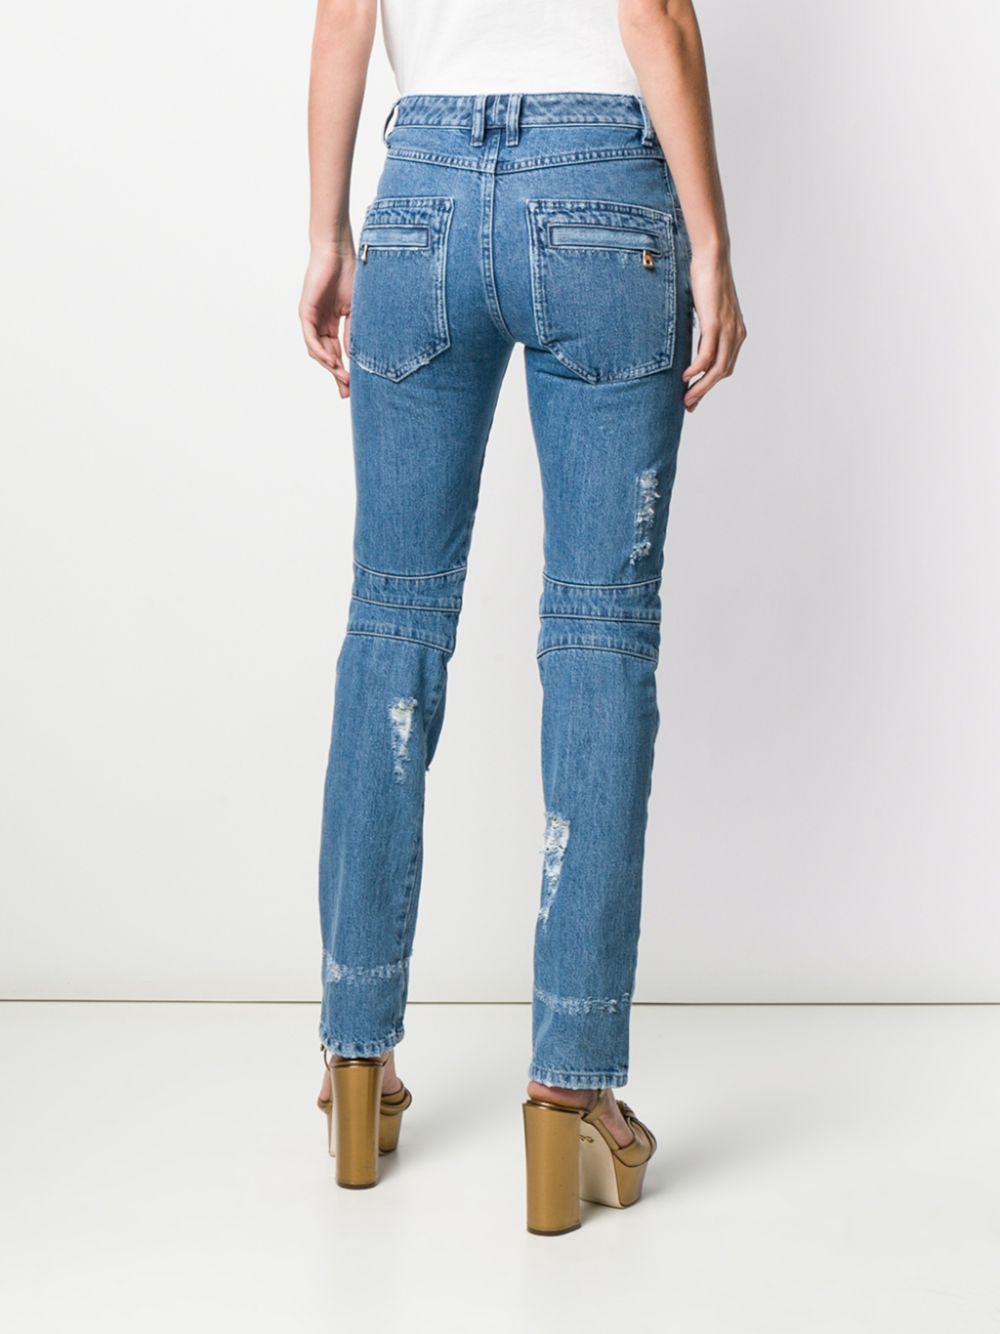 фото Balmain джинсы в байкерском стиле с прорезями